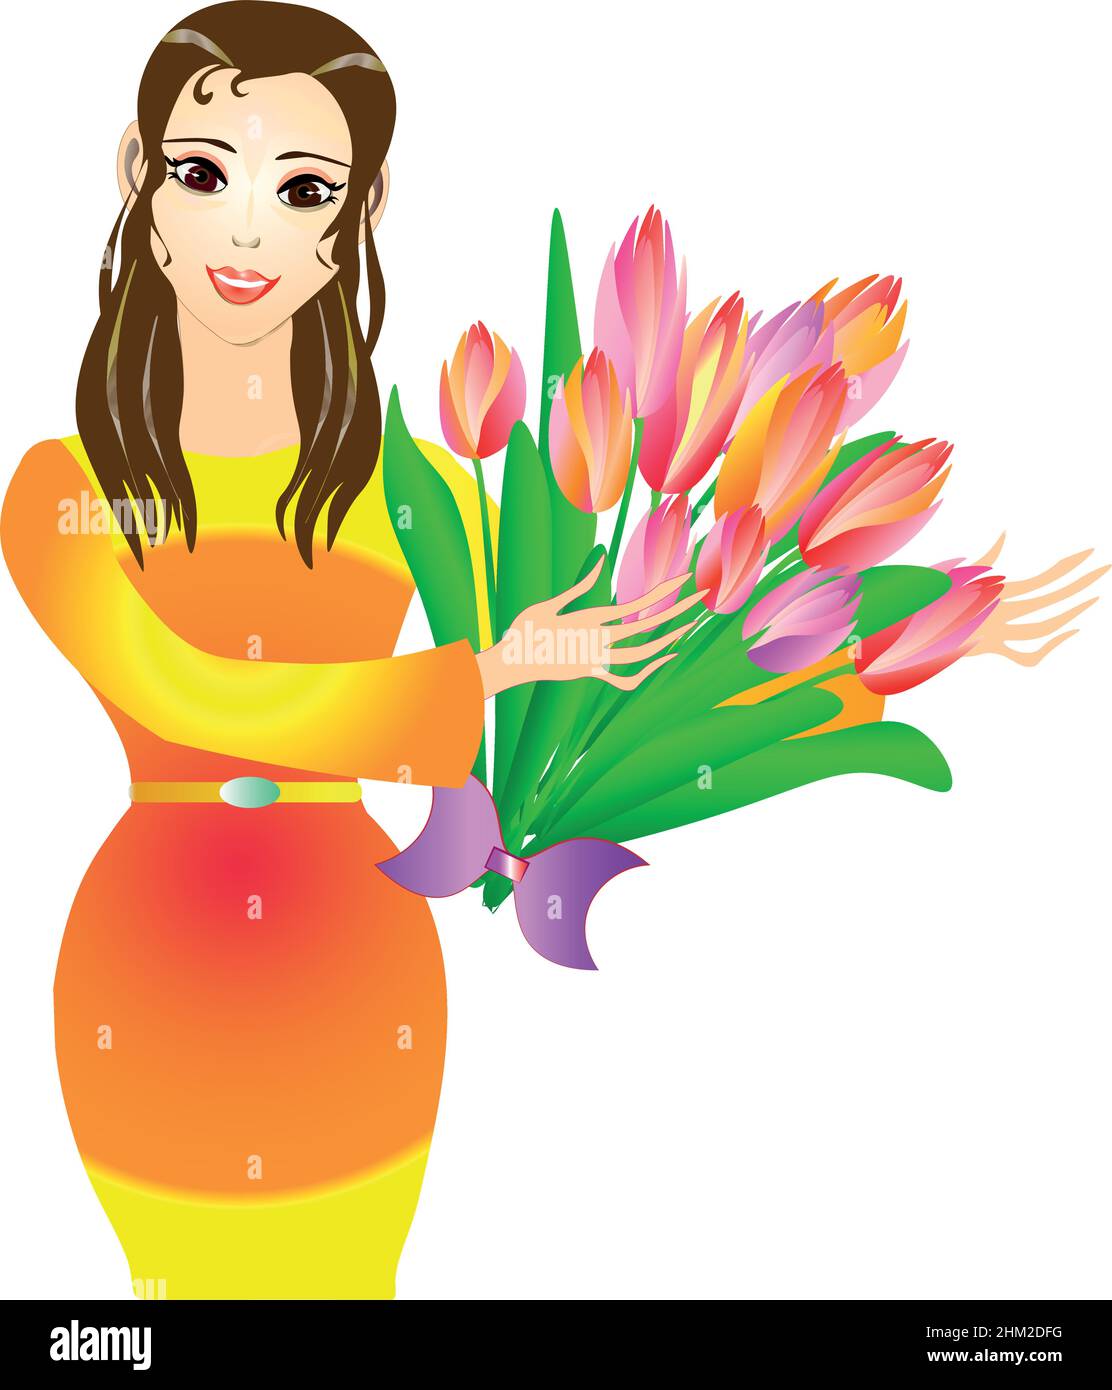 Charmante illustration de la Dame avec un buoqet de magnifiques tulipes.Journée internationale de la femme. Vector Illustration de Vecteur